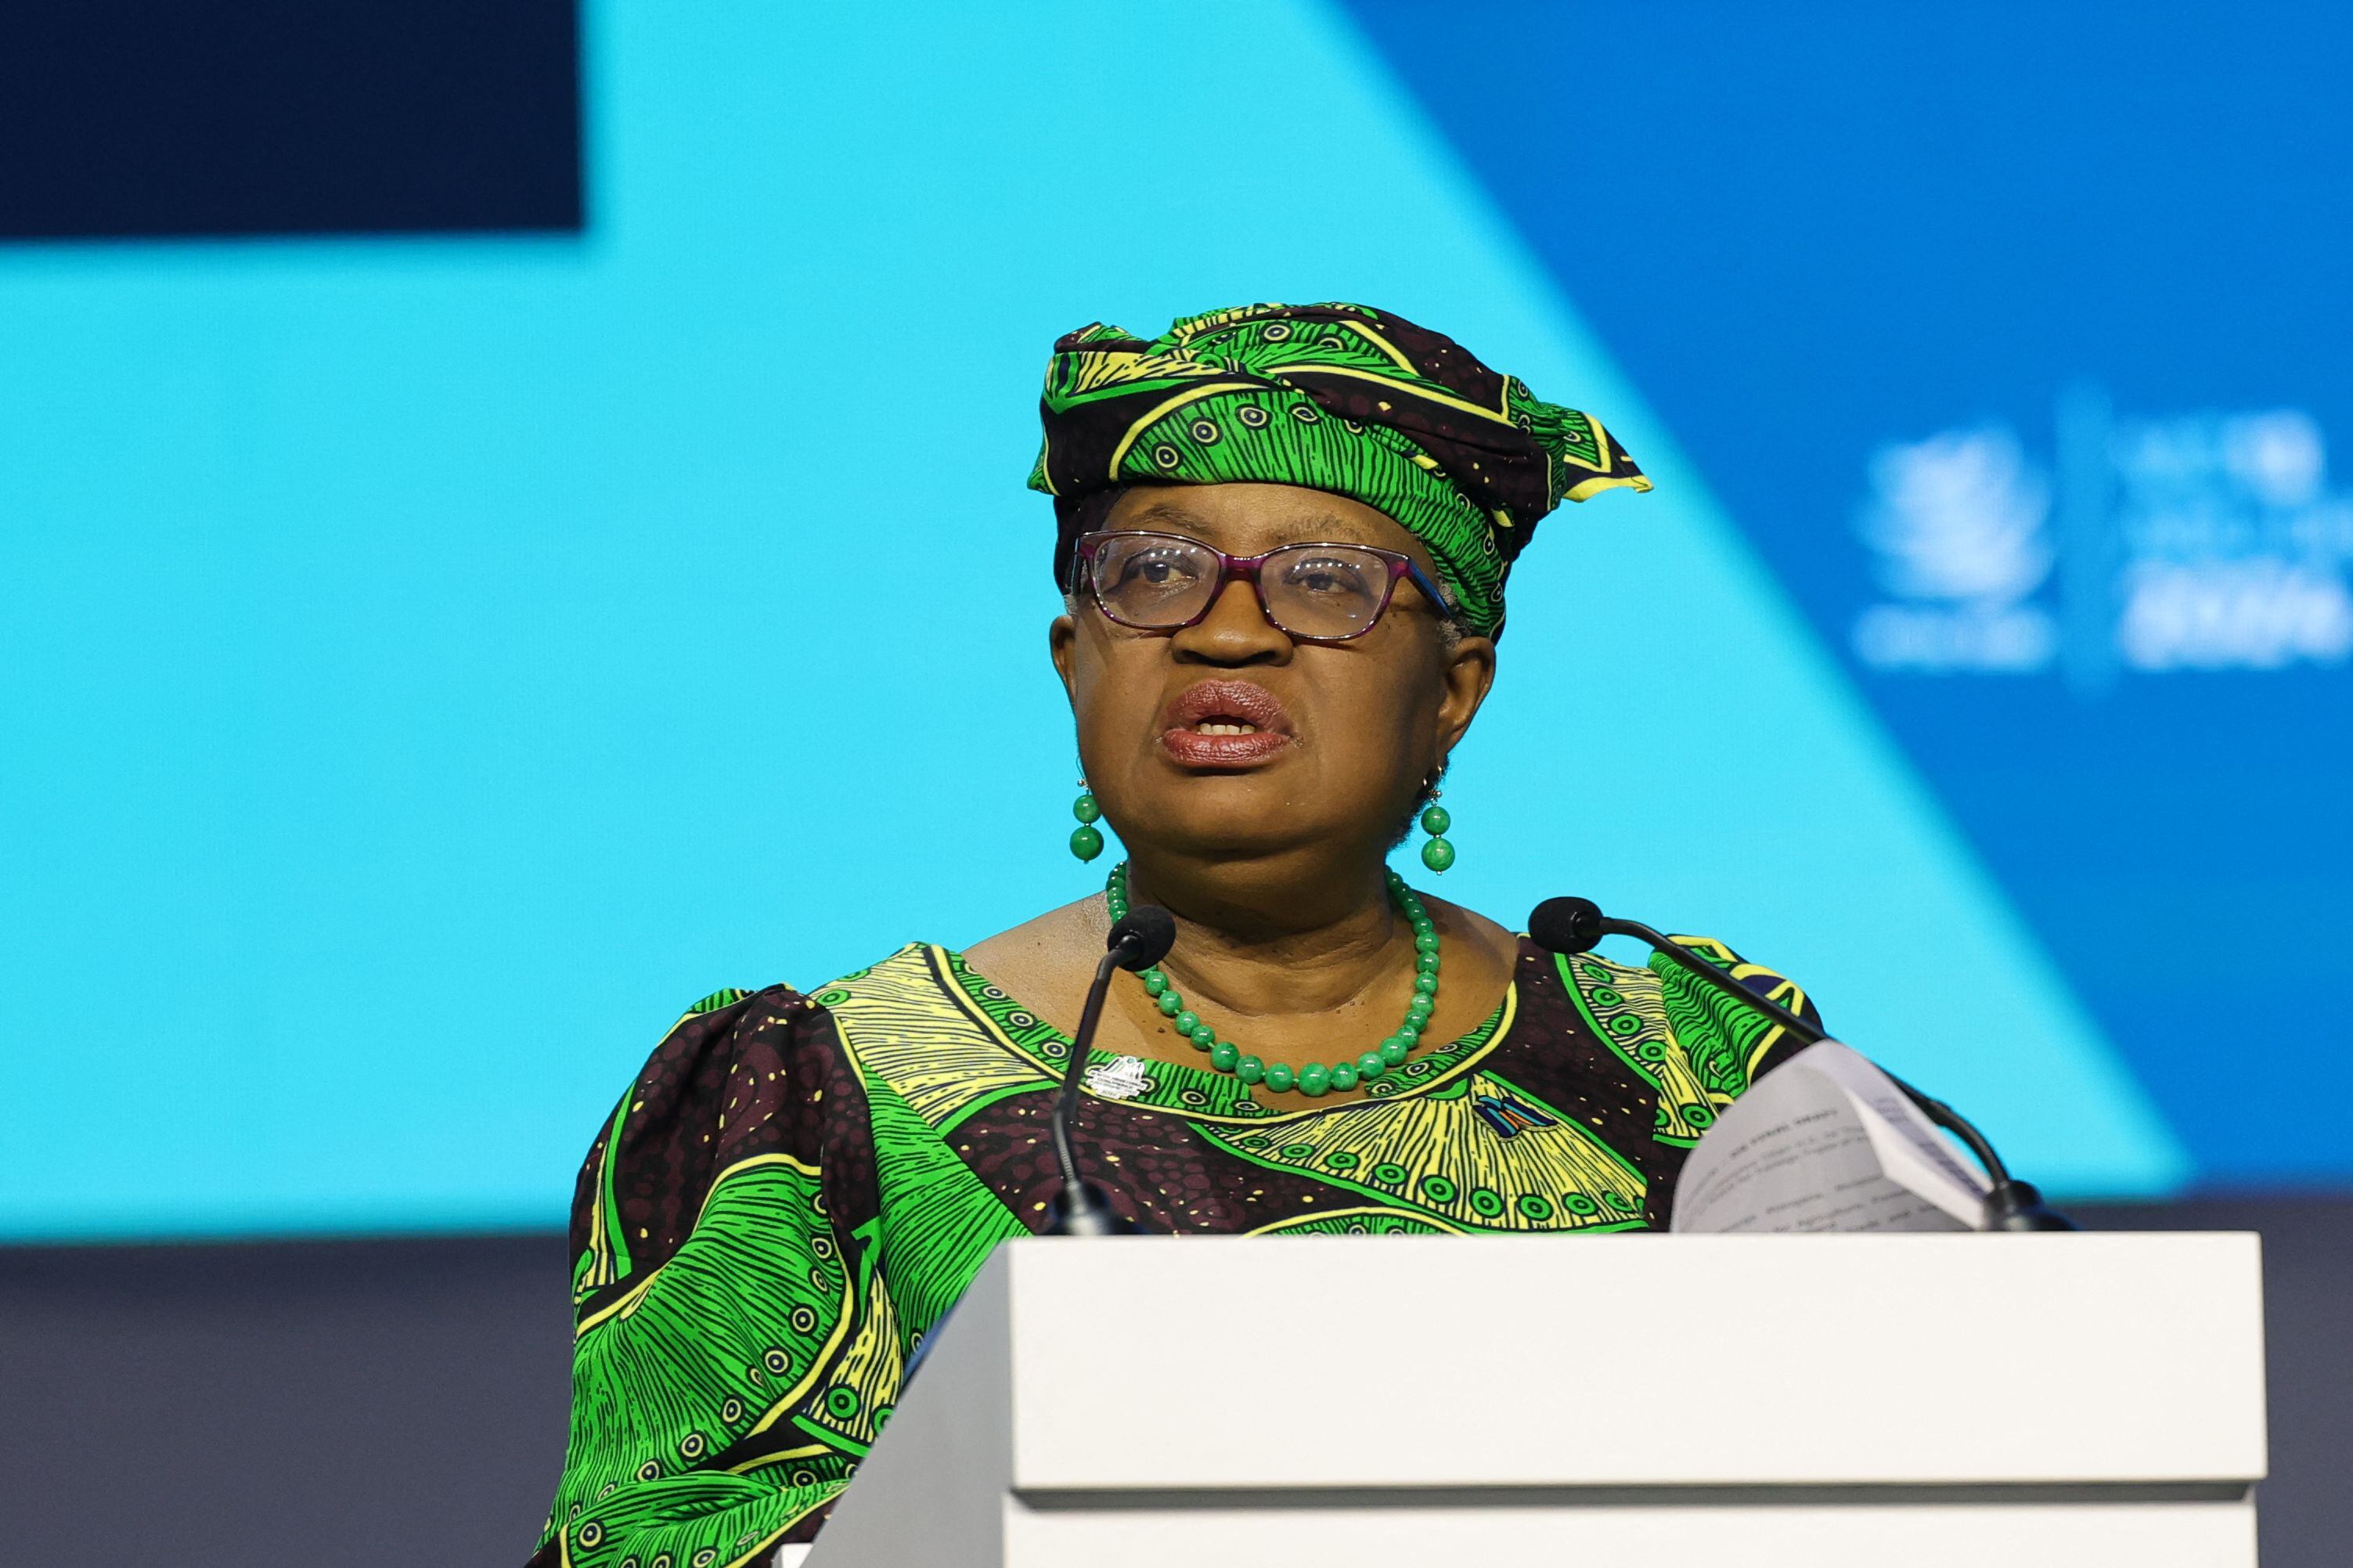 La Directora General de la Organización Mundial del Comercio (OMC), Ngozi Okonjo-Iweala, instó a alcanzar acuerdos en un contexto de tensiones geopolíticas entre distintos países miembros.